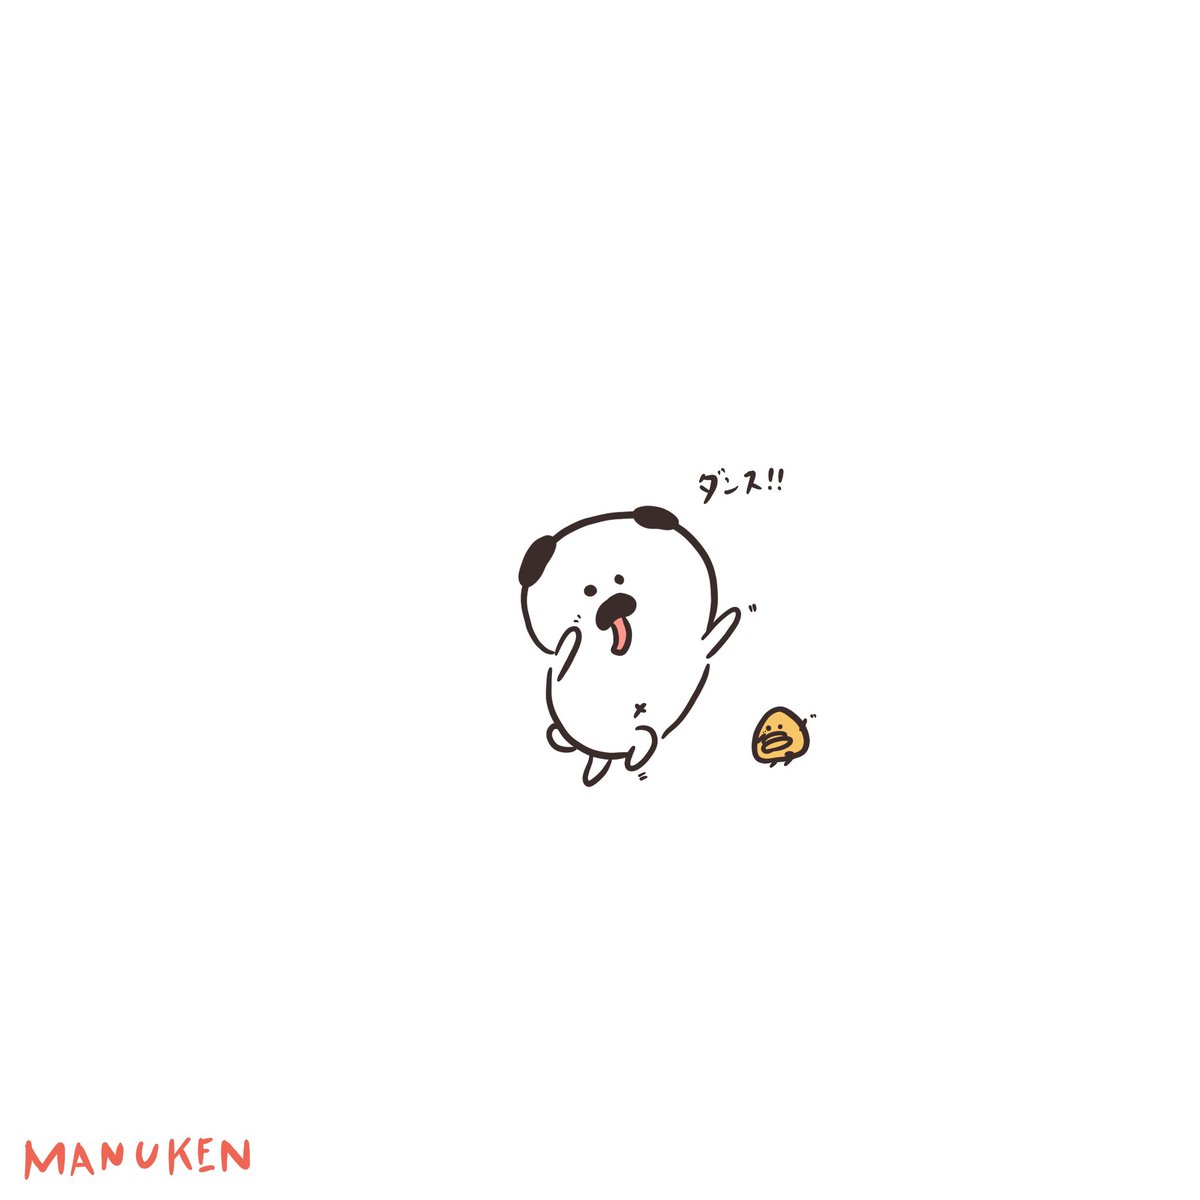 Manuken 雨だー ダンス 絵描きさんと繋がりたい マスコット Pug パグ イラスト マンガ まぬけん トマト かわいい いぬ Japan イラスト王国 Illustrator 踊る ダンス T Co Lubmlsqc6c Twitter